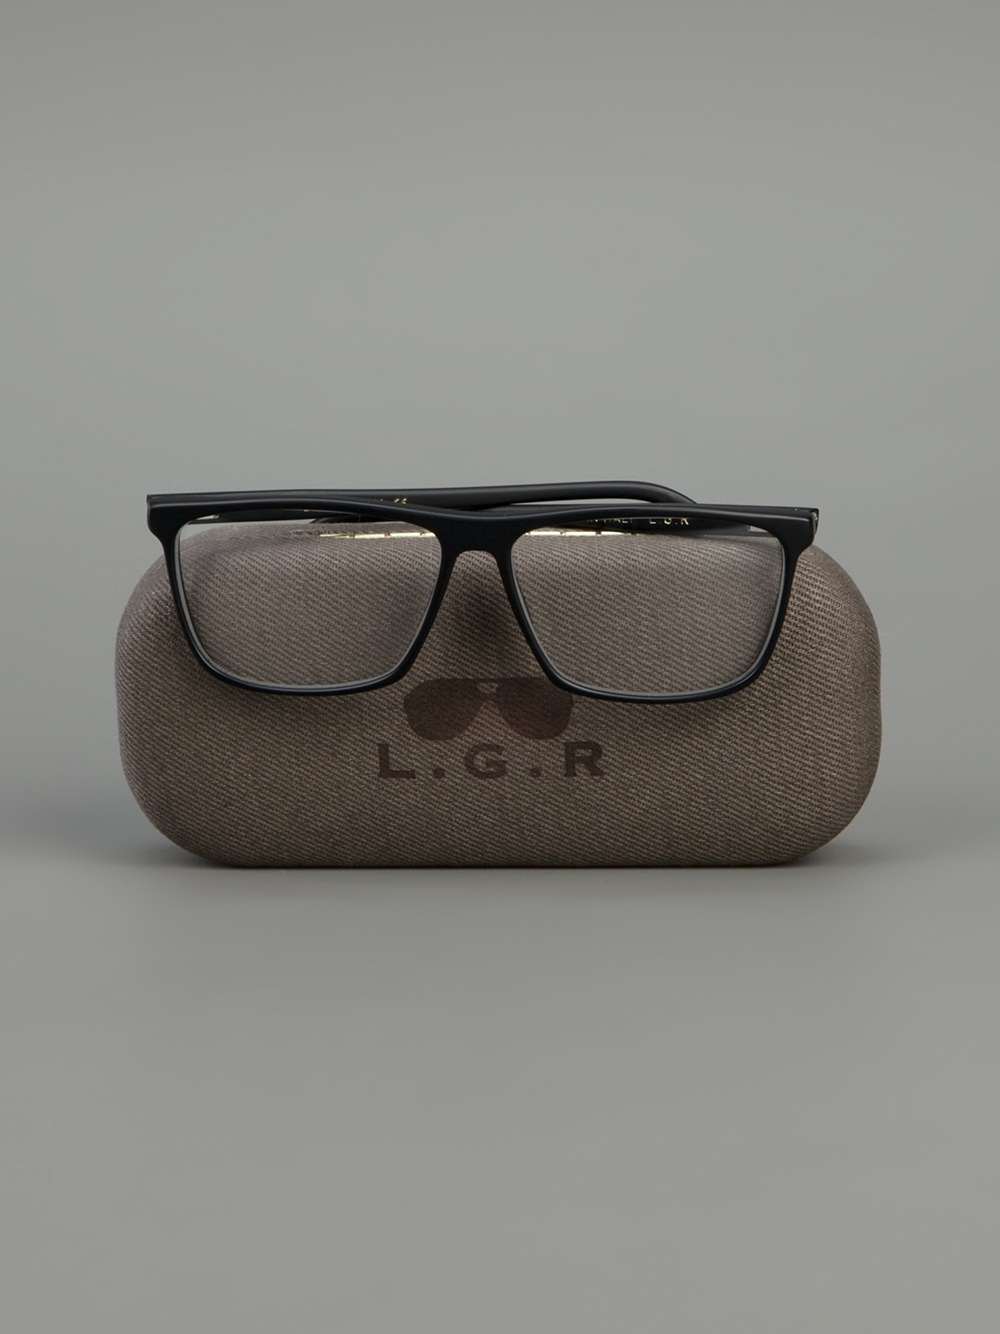 Lyst - Lgr Luxor Glasses in Black for Men